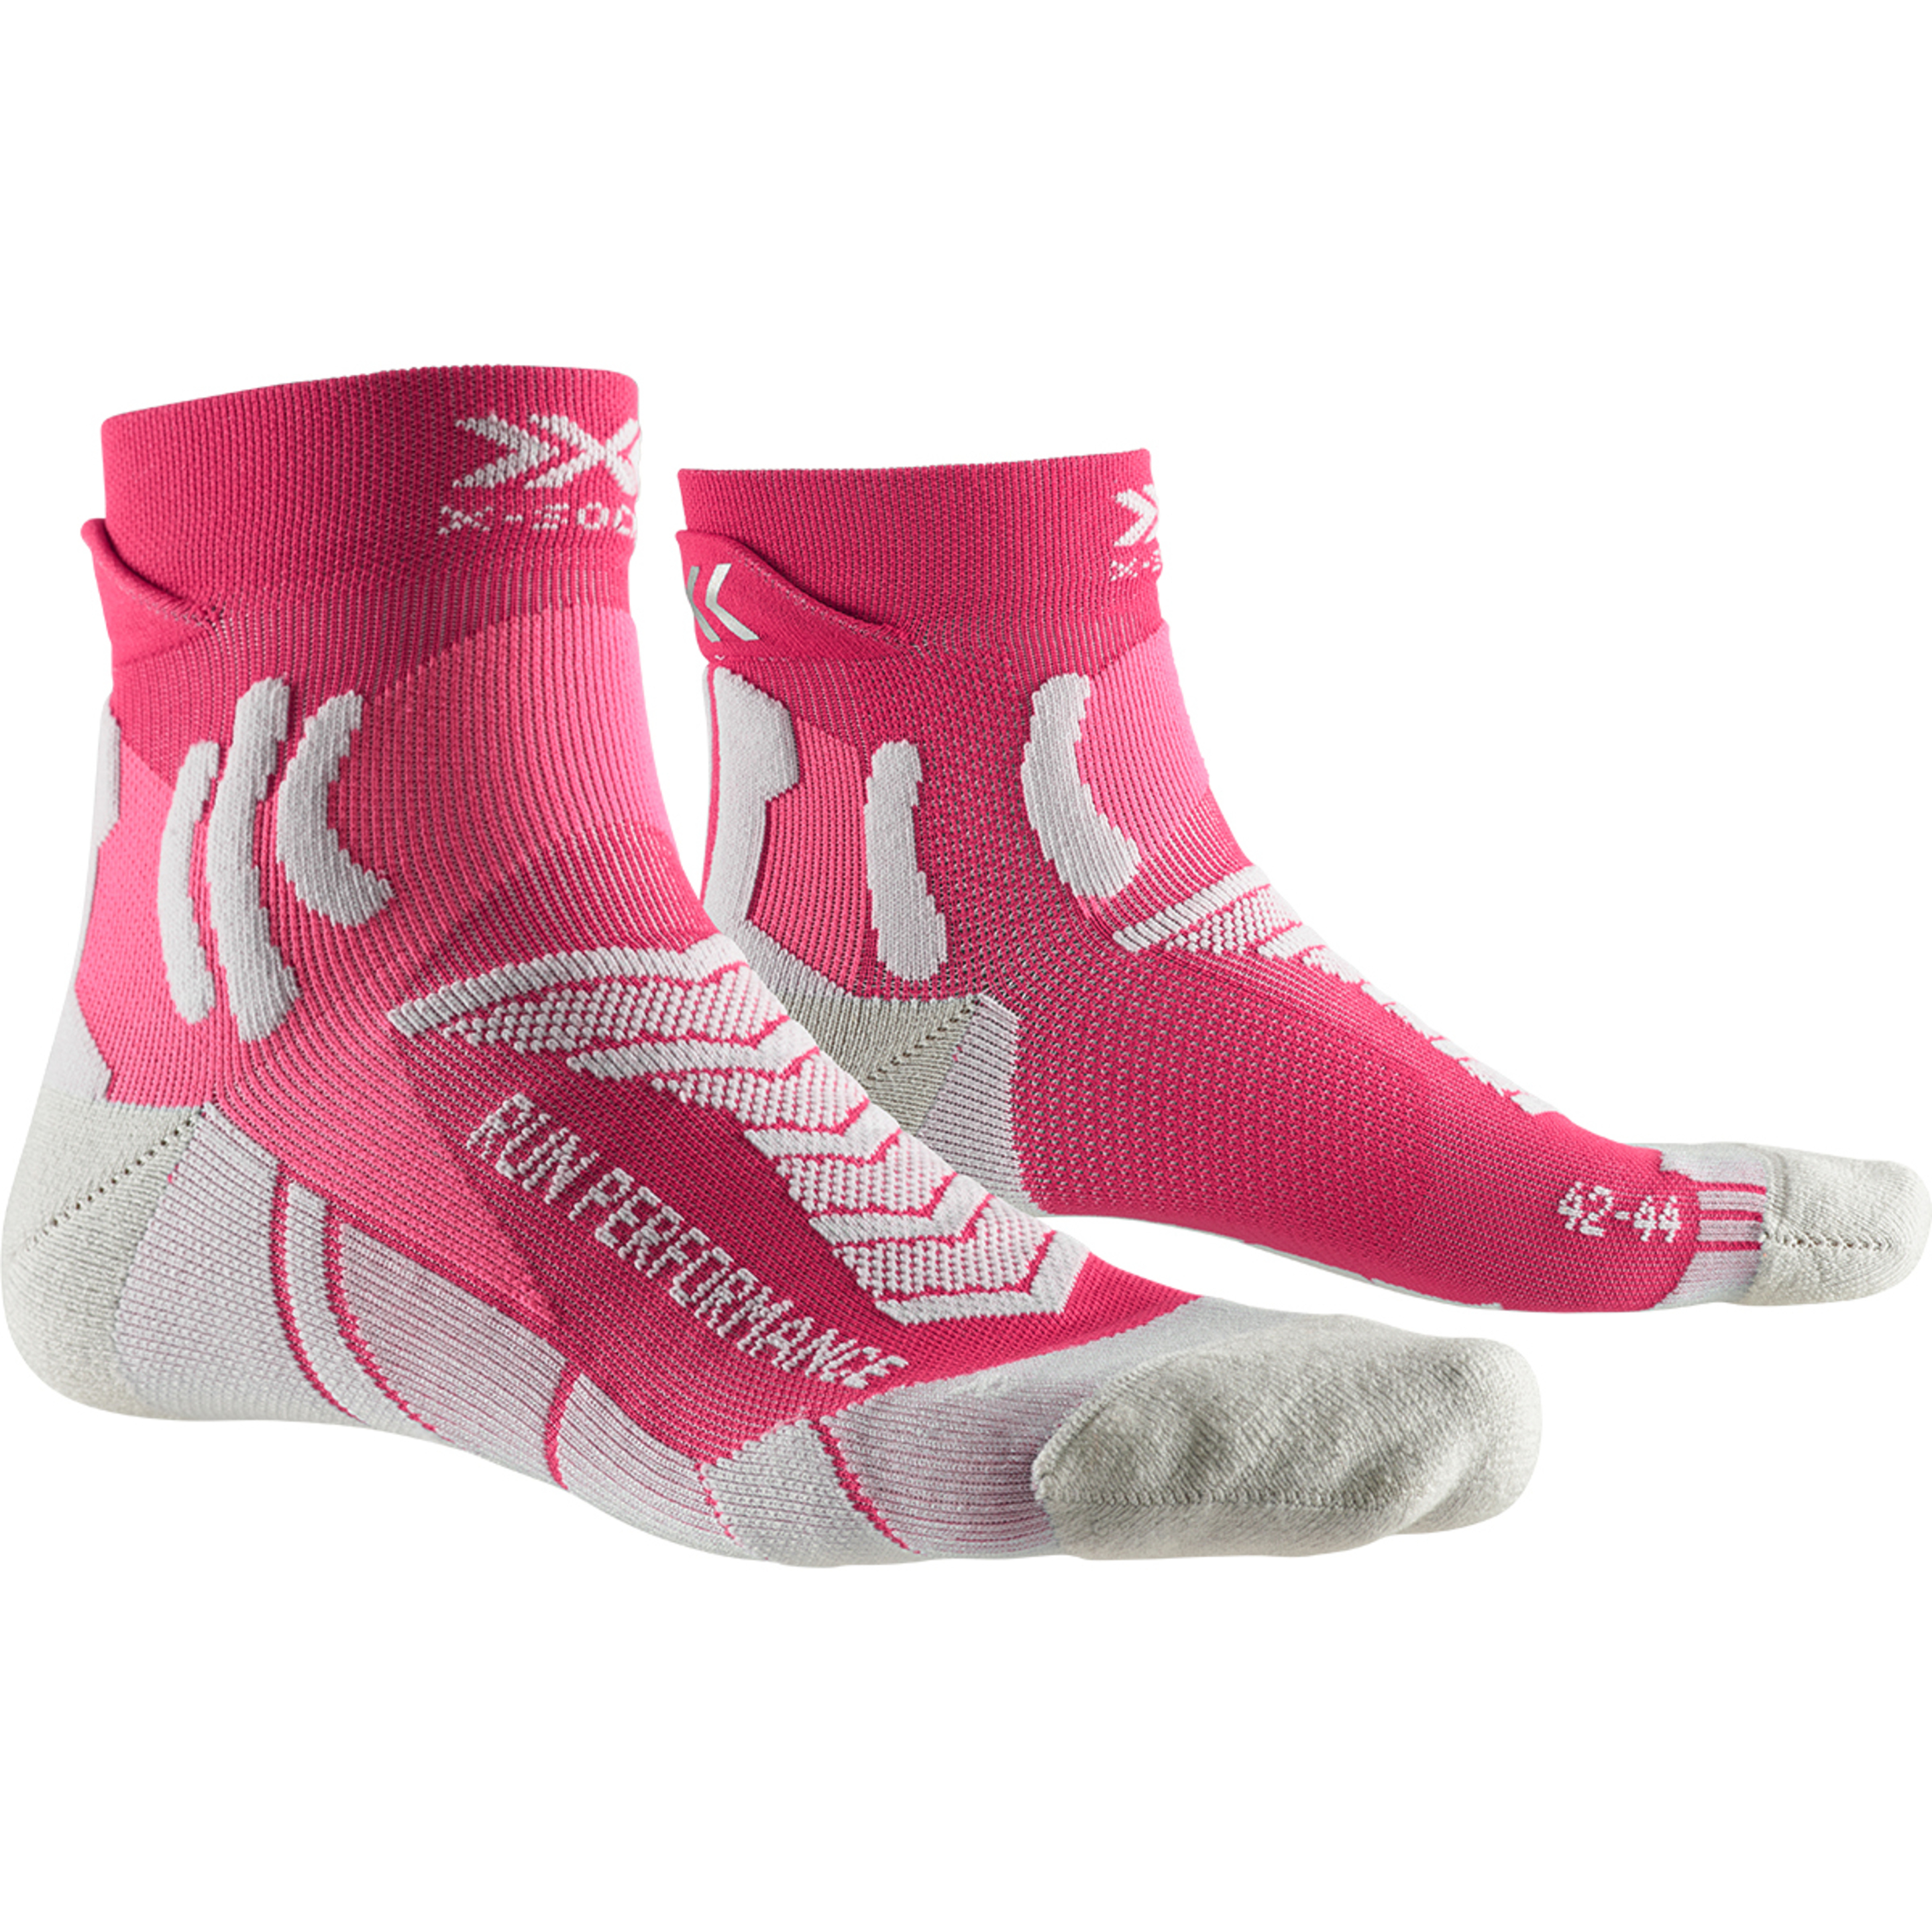 Calcetin Run Performance Mujer  X-socks - rosa - 